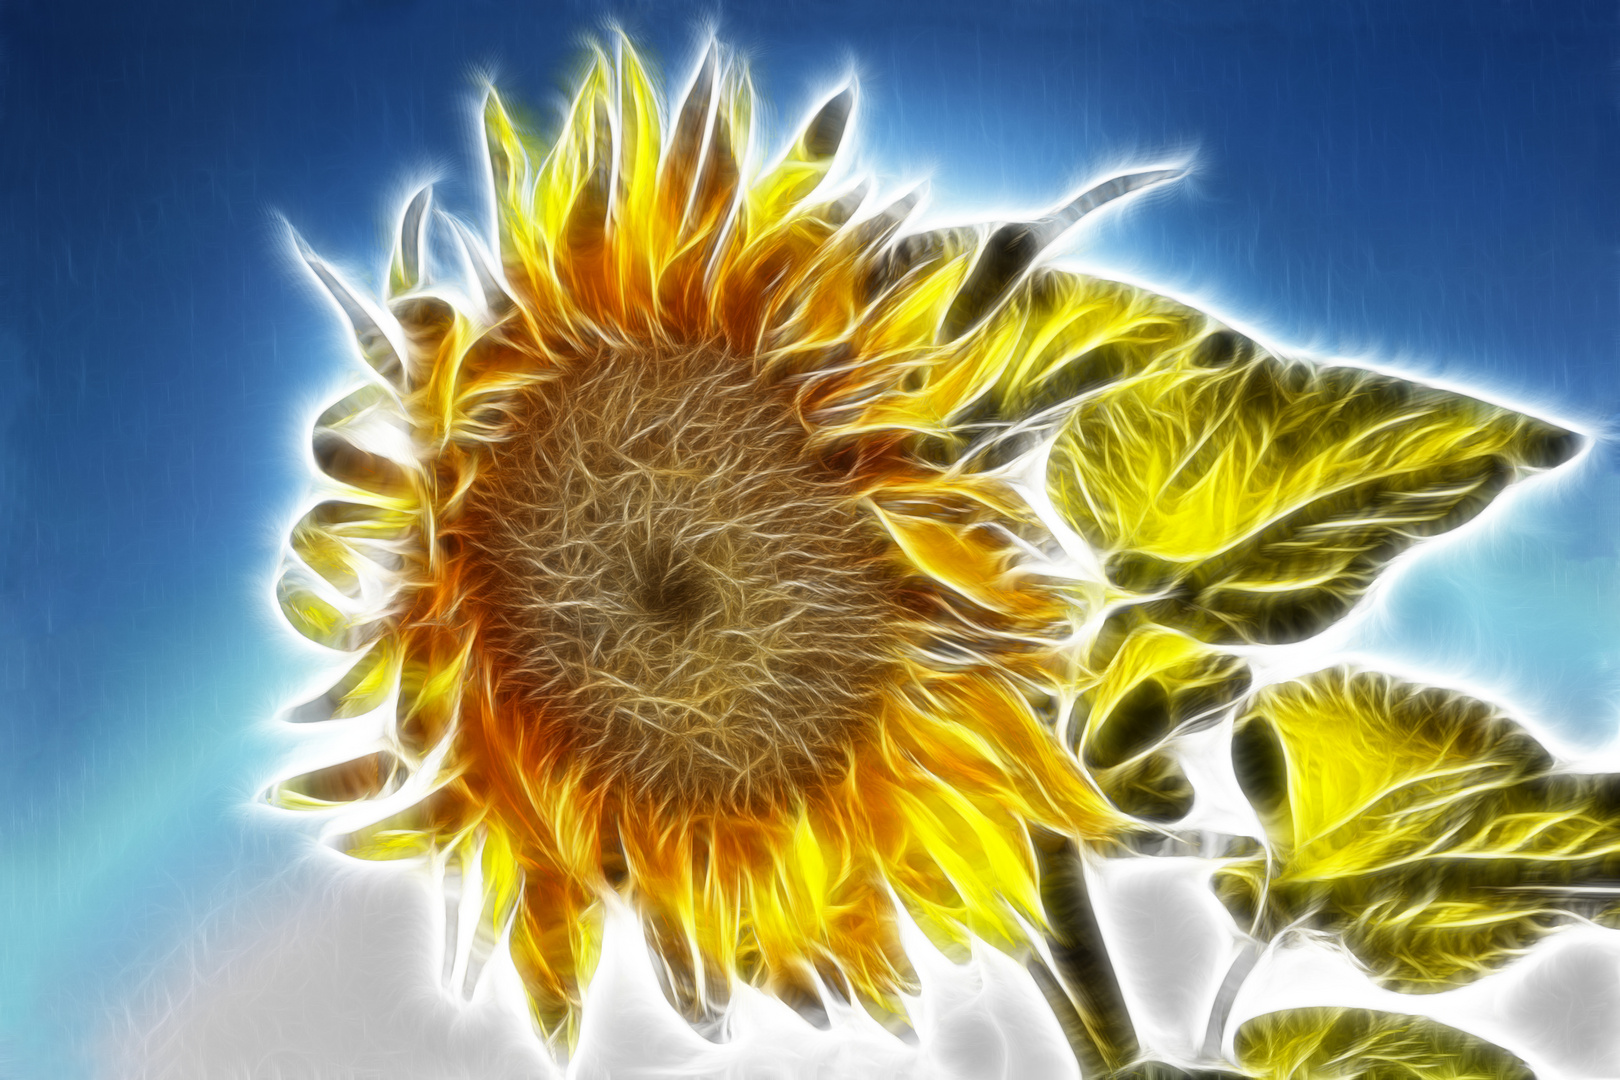 Sonnenblume fraktal